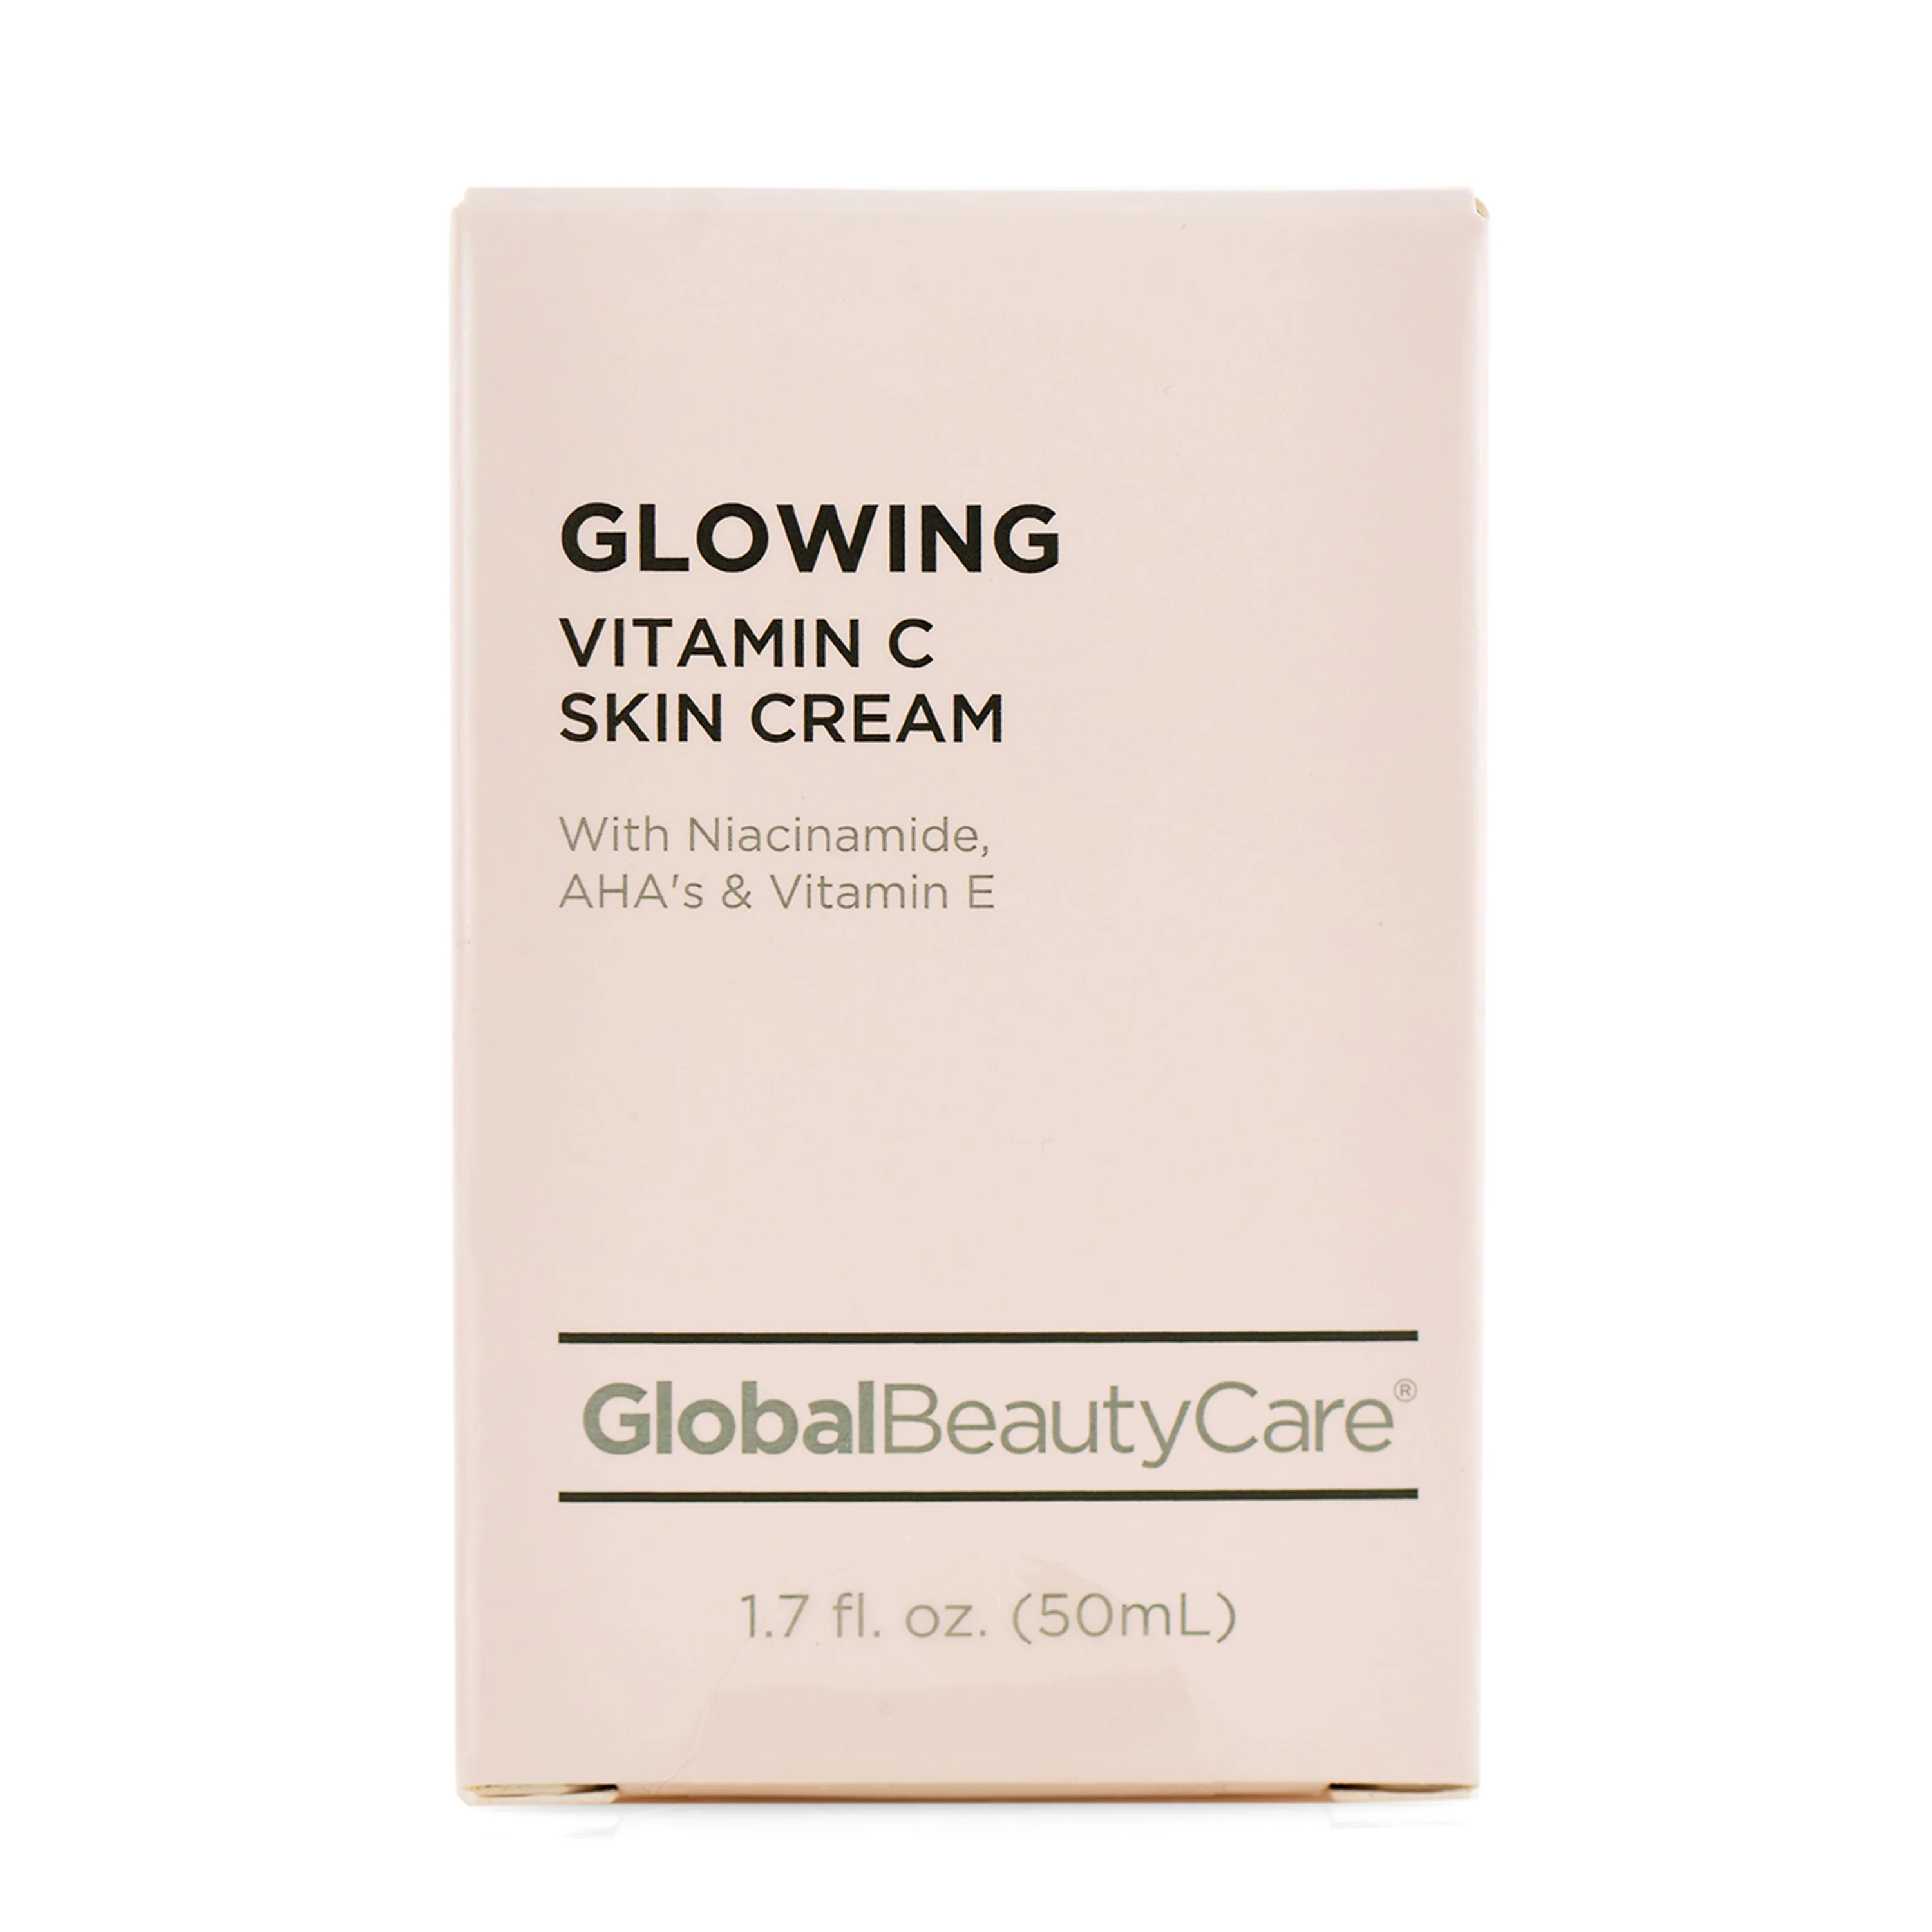 Global Beauty Care - Glowing Vitamin C Skin Cream 50ml